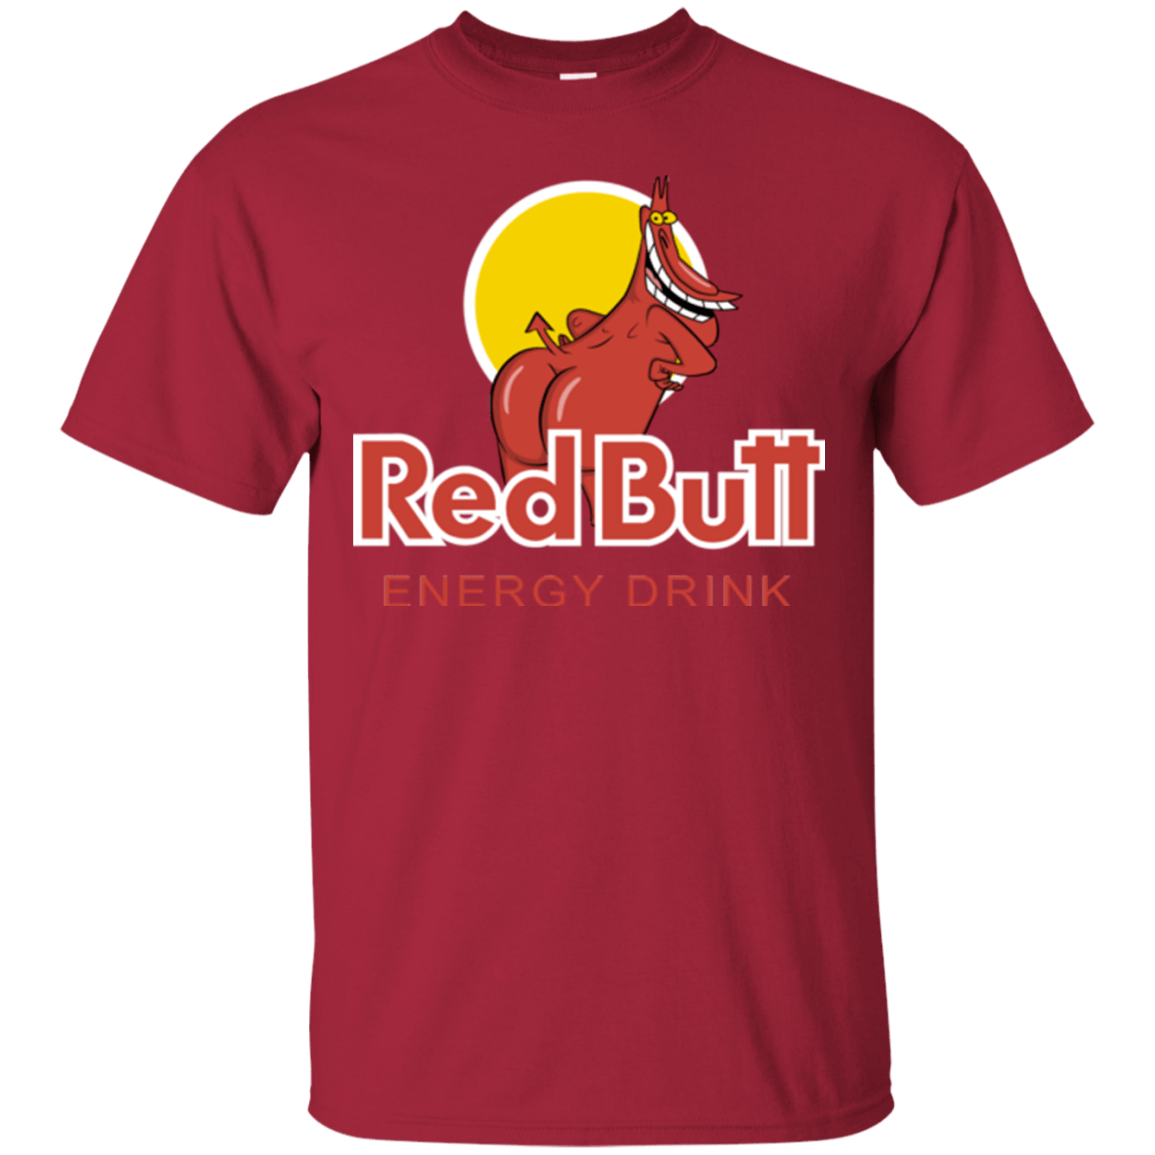 T-Shirts Cardinal / Small Red butt T-Shirt